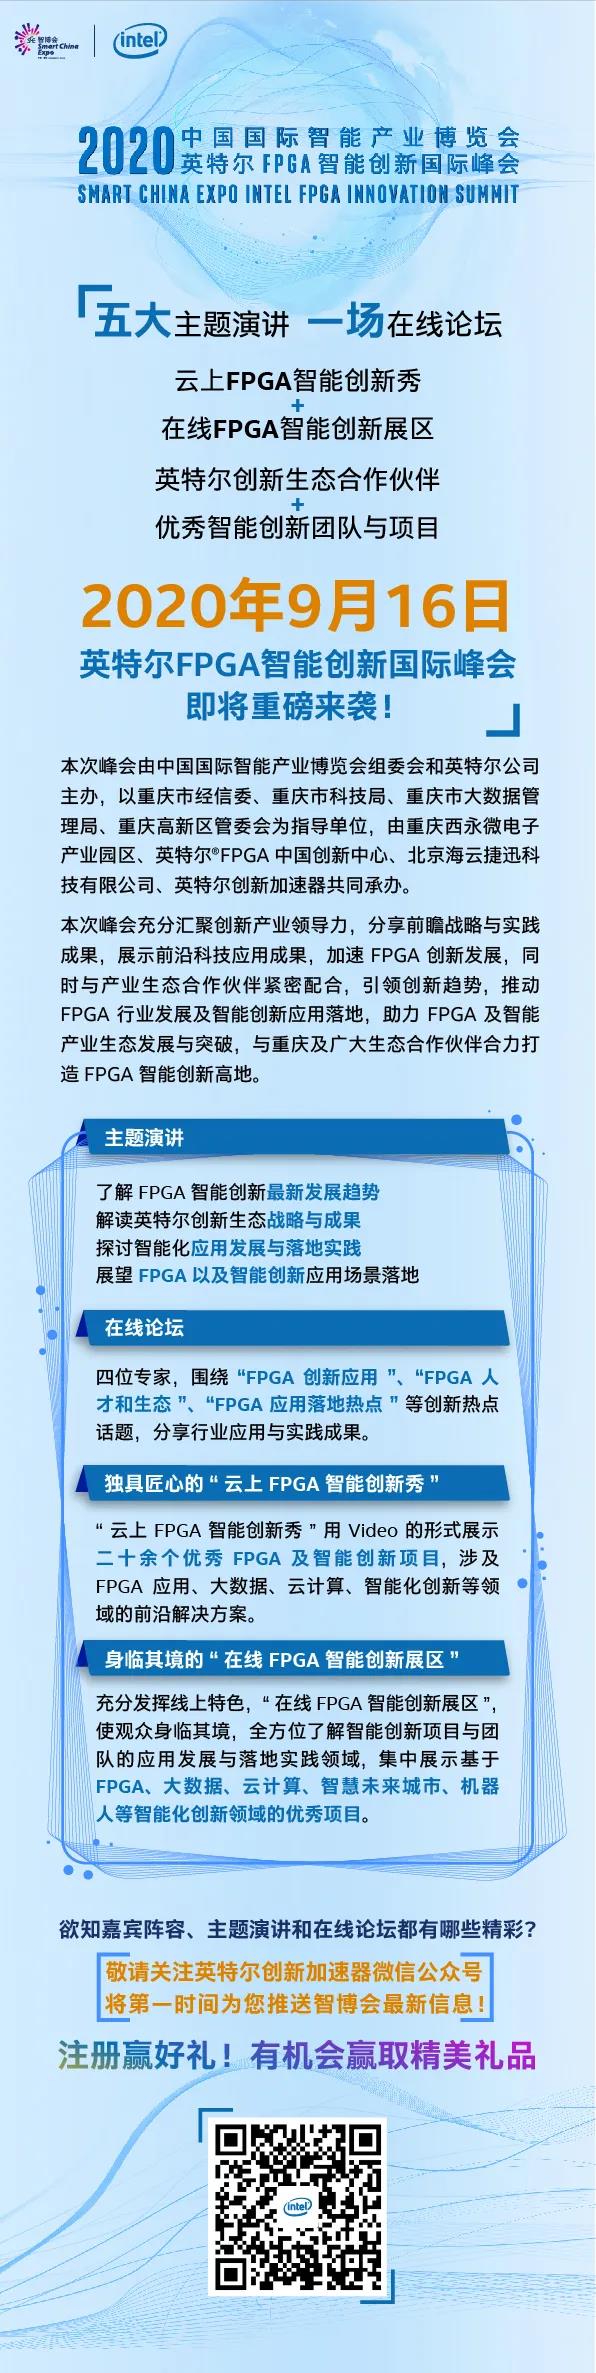 2020智博会FPGA智能创新国际峰会